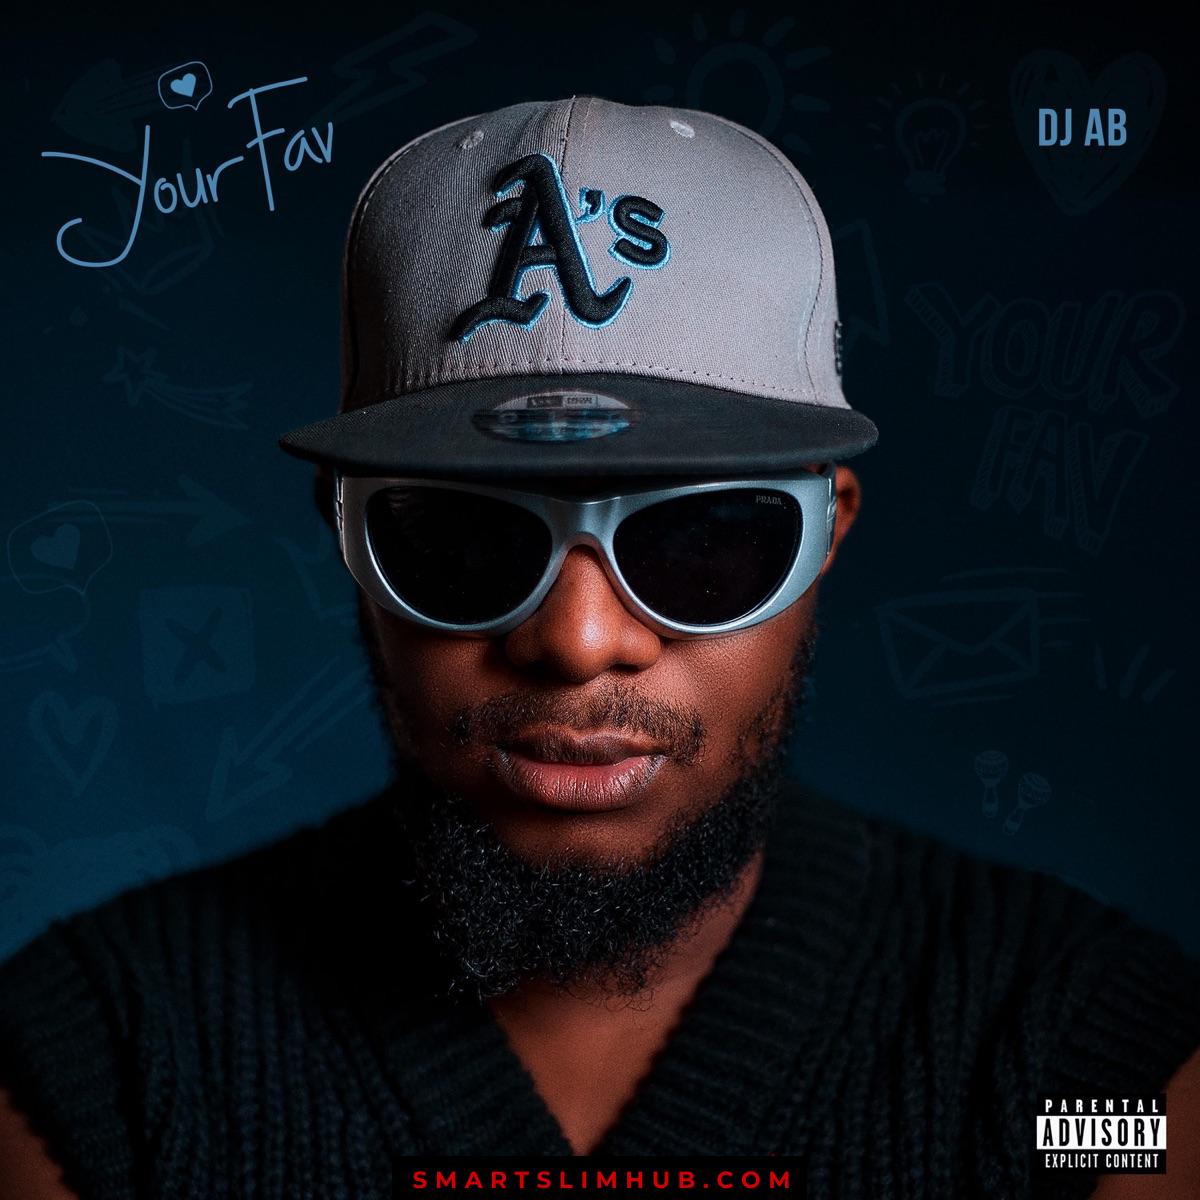 DJ AB – Your Fav Album